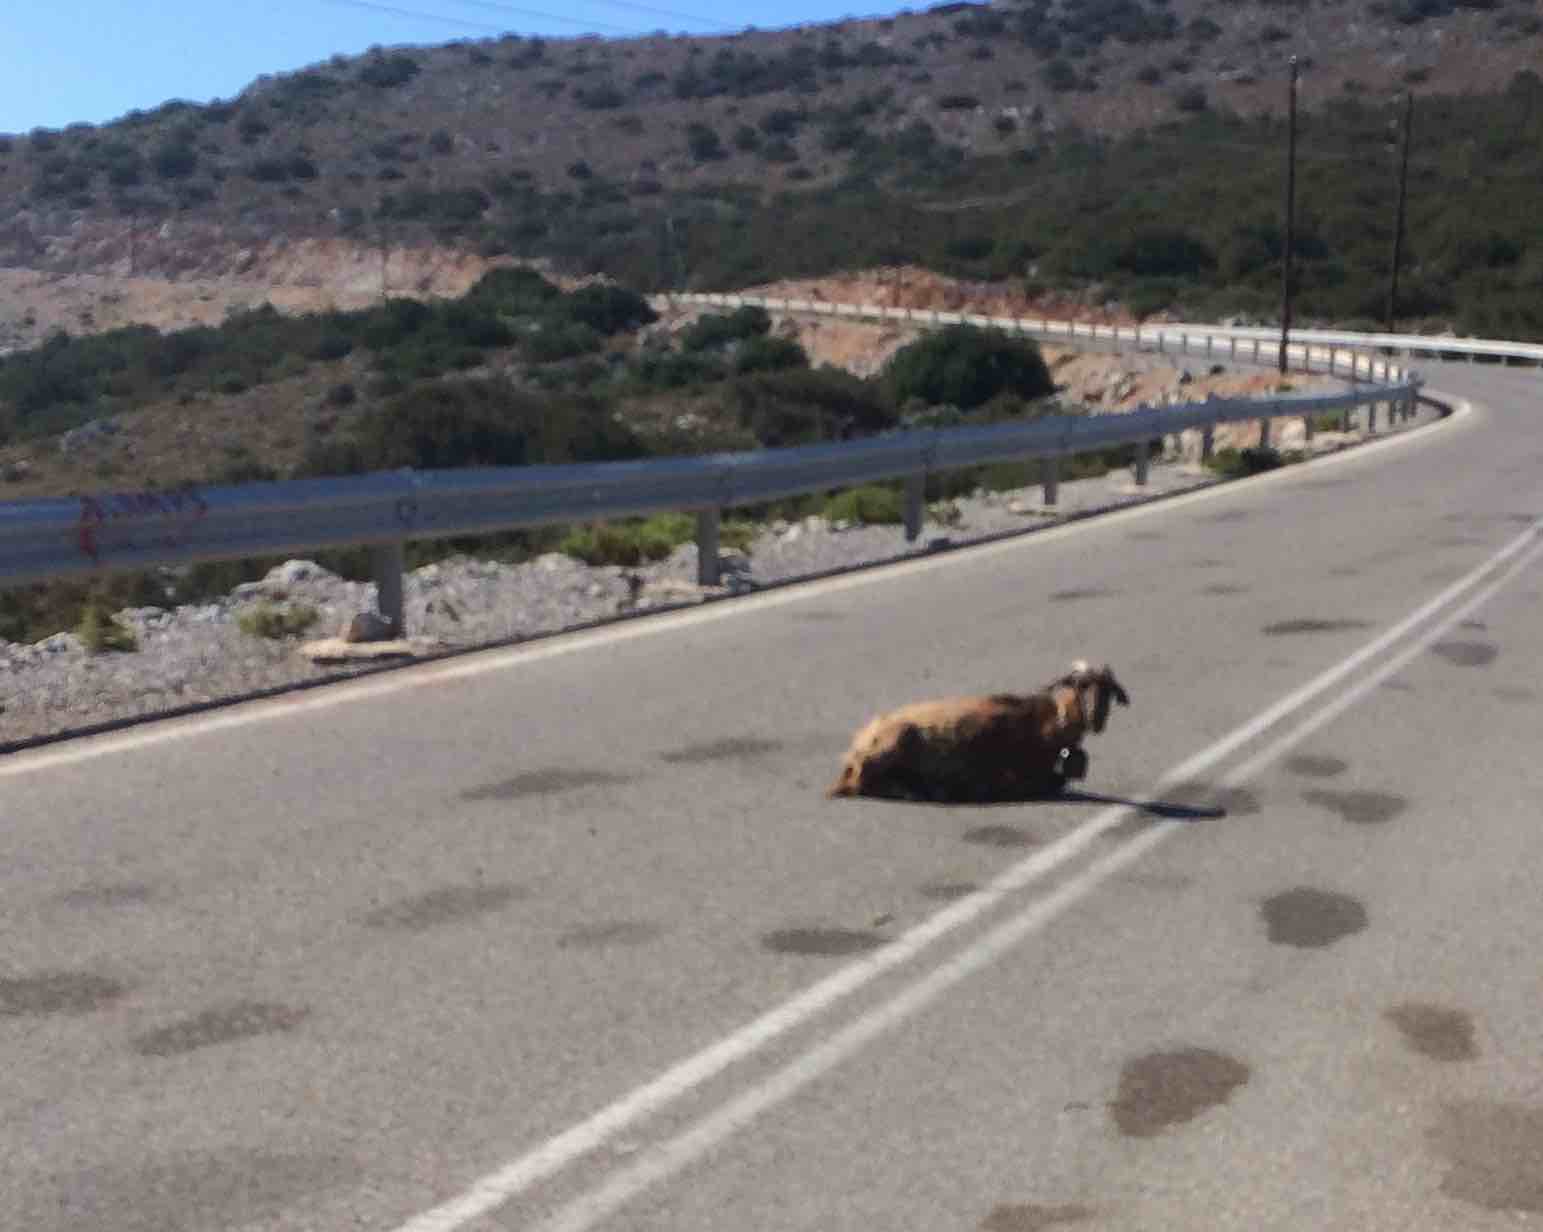 Goat in road